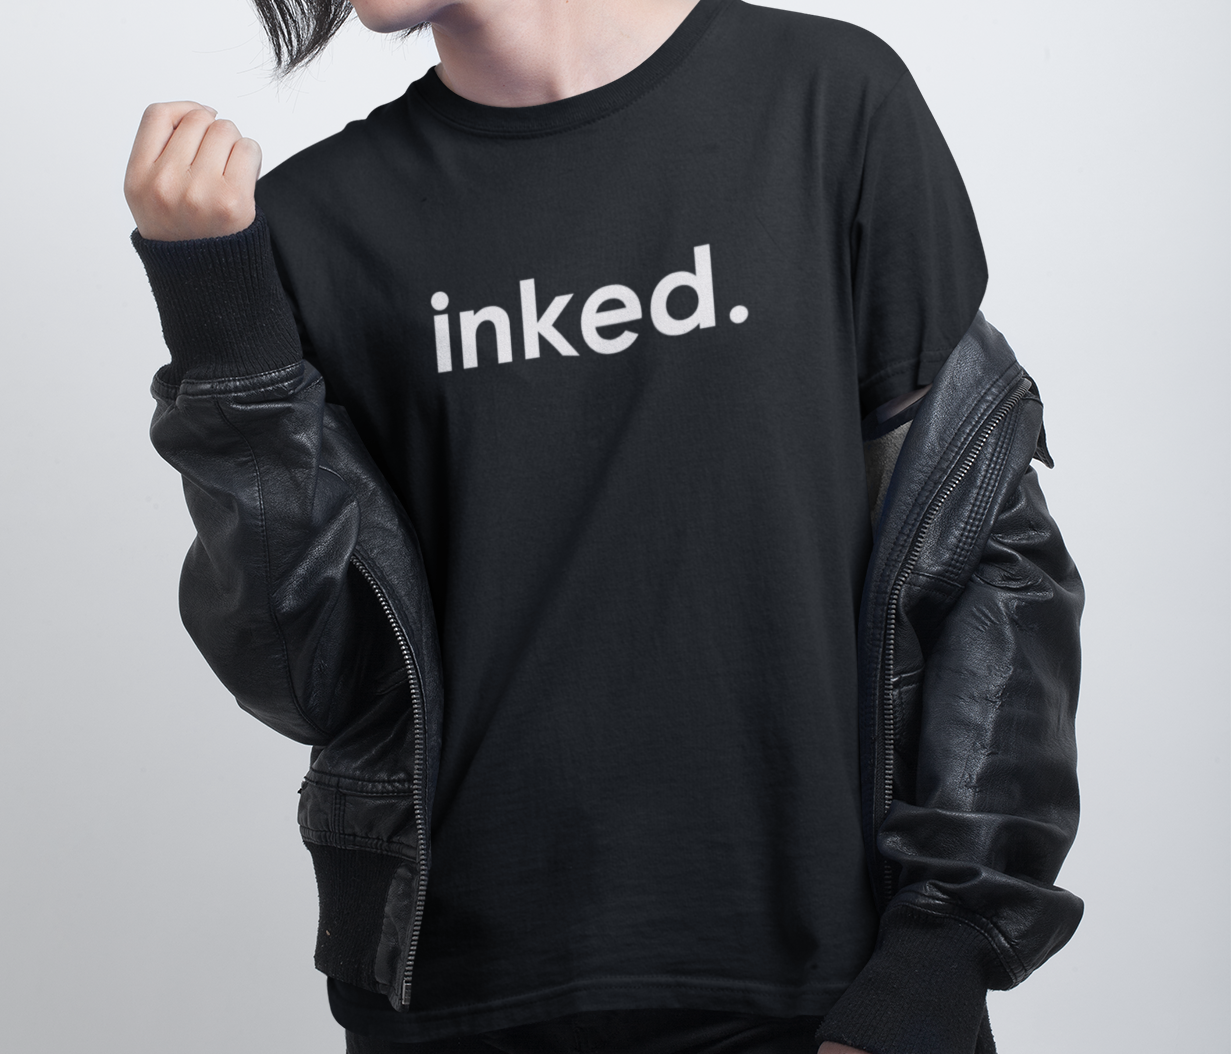 Inked. T-shirt - Urbantshirts.co.uk